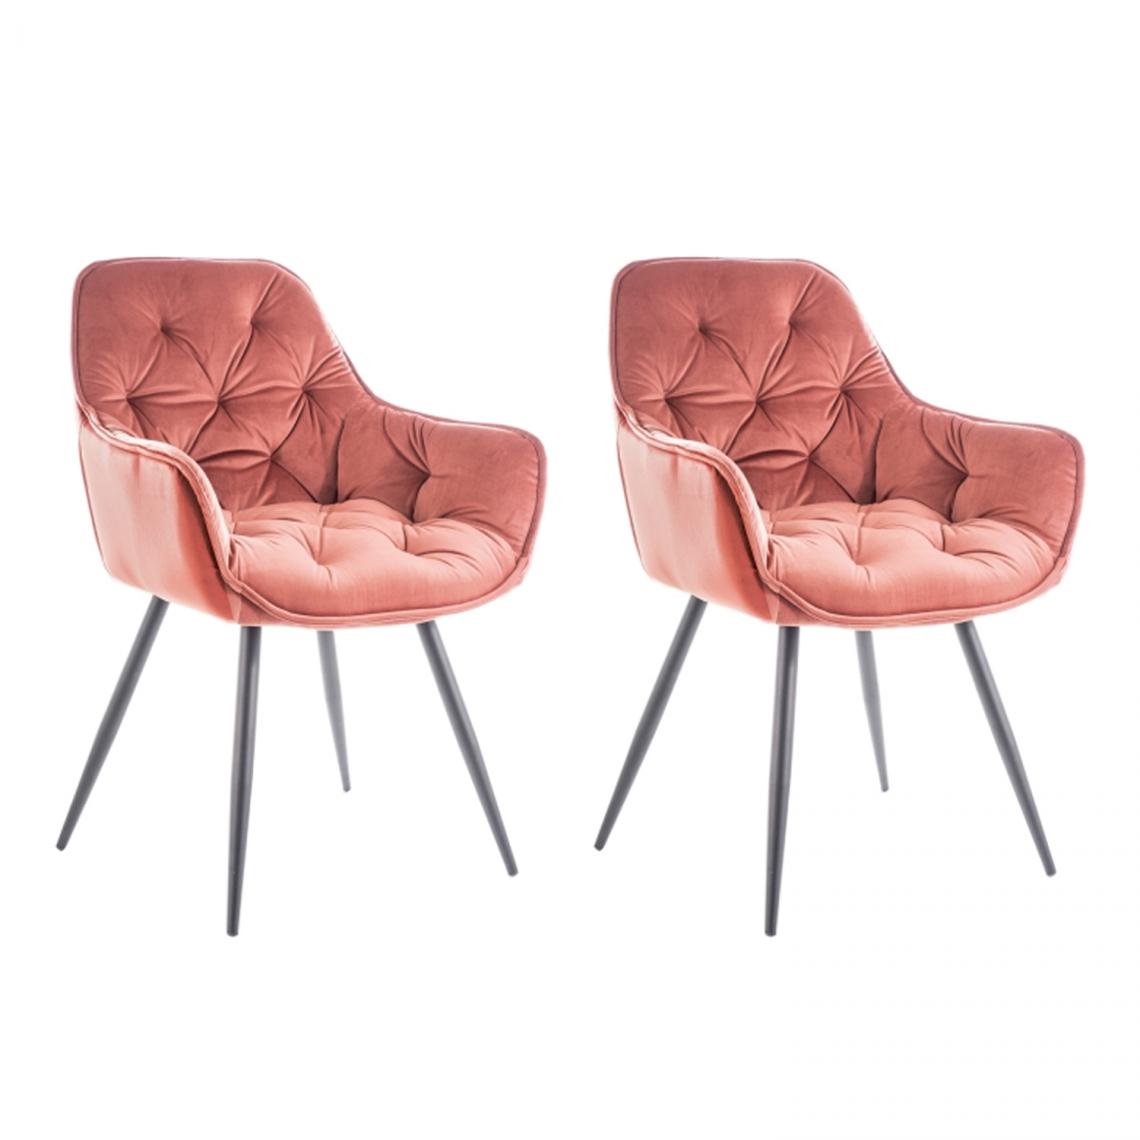 Hucoco - CHERLY - Lot de 2 chaises avec accoudoirs style glamour - 83x45x44cm - Velours + Pieds en métal - Rose - Chaises